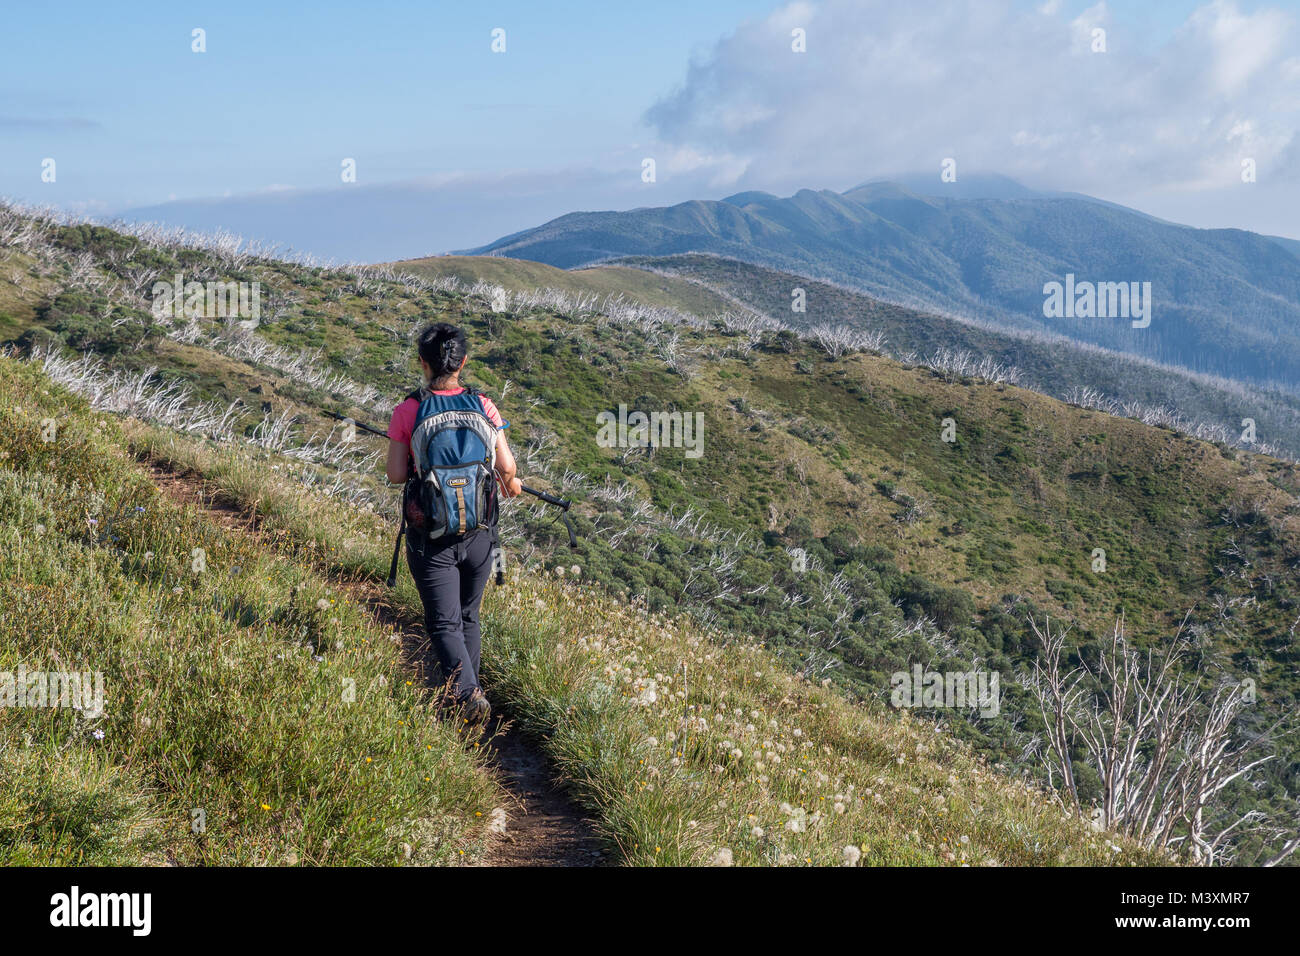 Asiatische Frau Wanderer mit schwarzen Hosen, rosa Top trägt blaue Rucksack wandern in den Bergen mit Trail, Grate und Gipfel im Hintergrund. Stockfoto